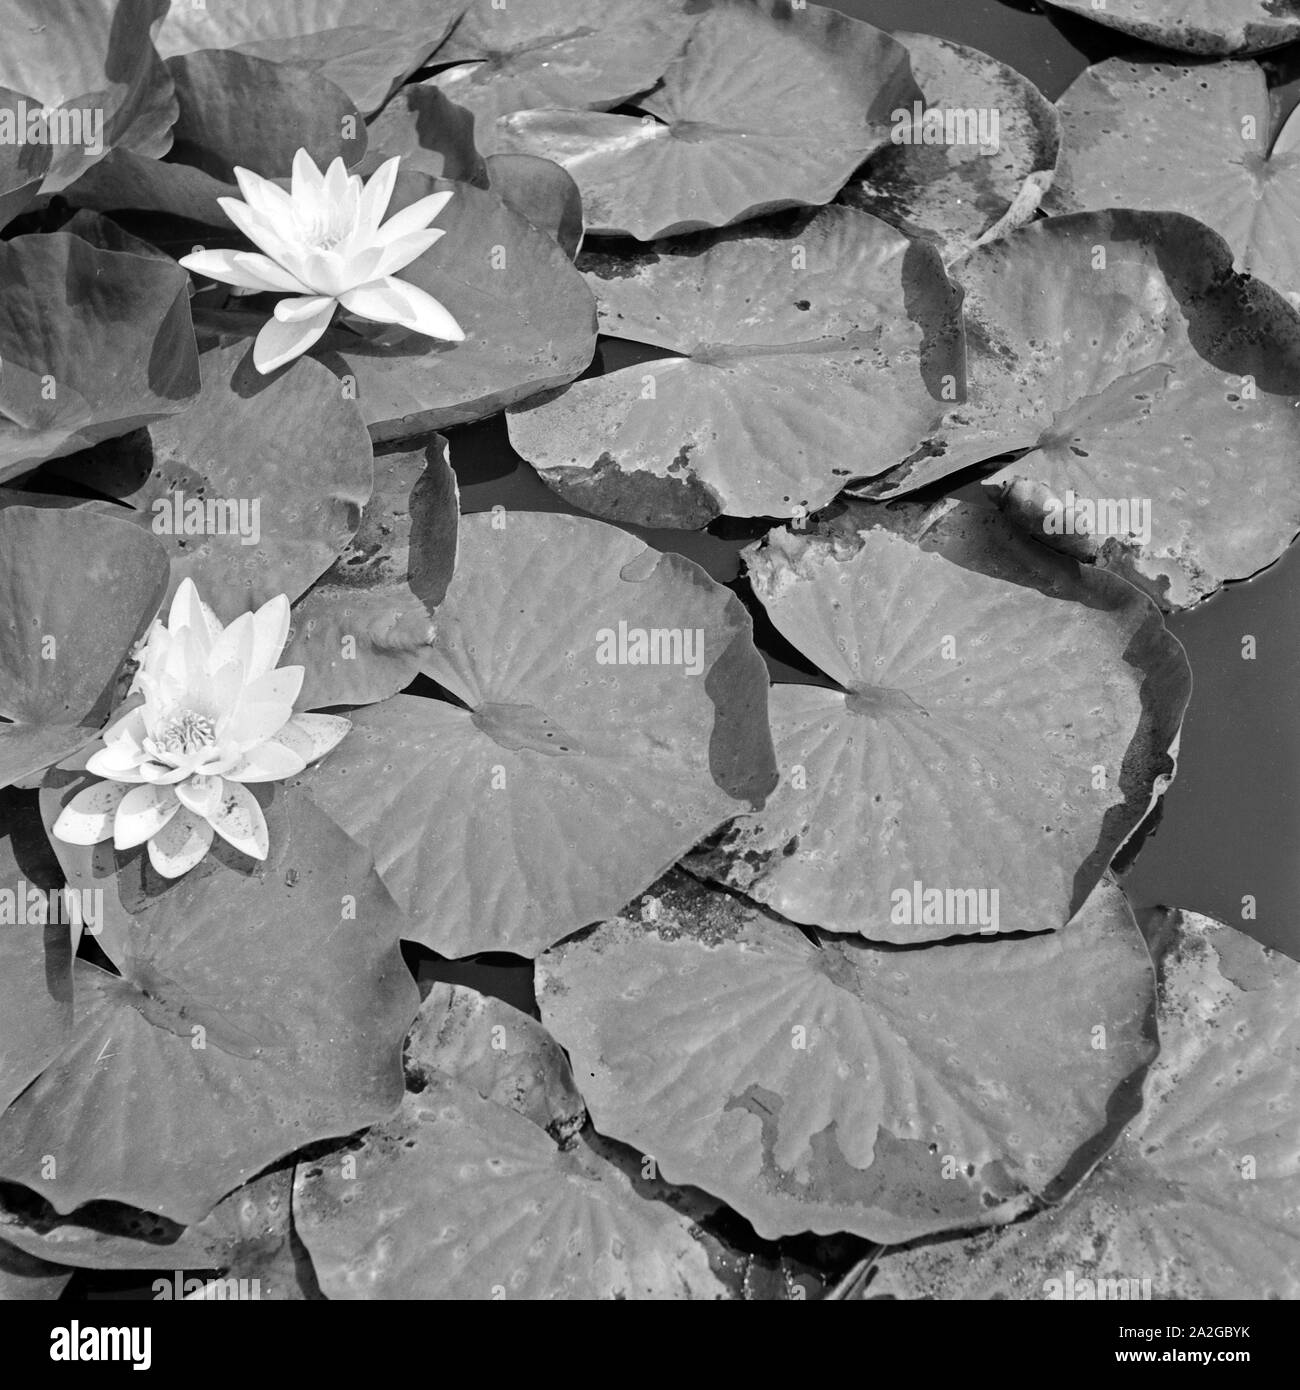 Seerosen auf einem Teich im Stadtgarten Gelsenkirchen, Deutschland 1930er Jahre. White water lilies at a pond in Gelsenkirchen Stadtgarten public gardens, Germany 1930s. Stock Photo